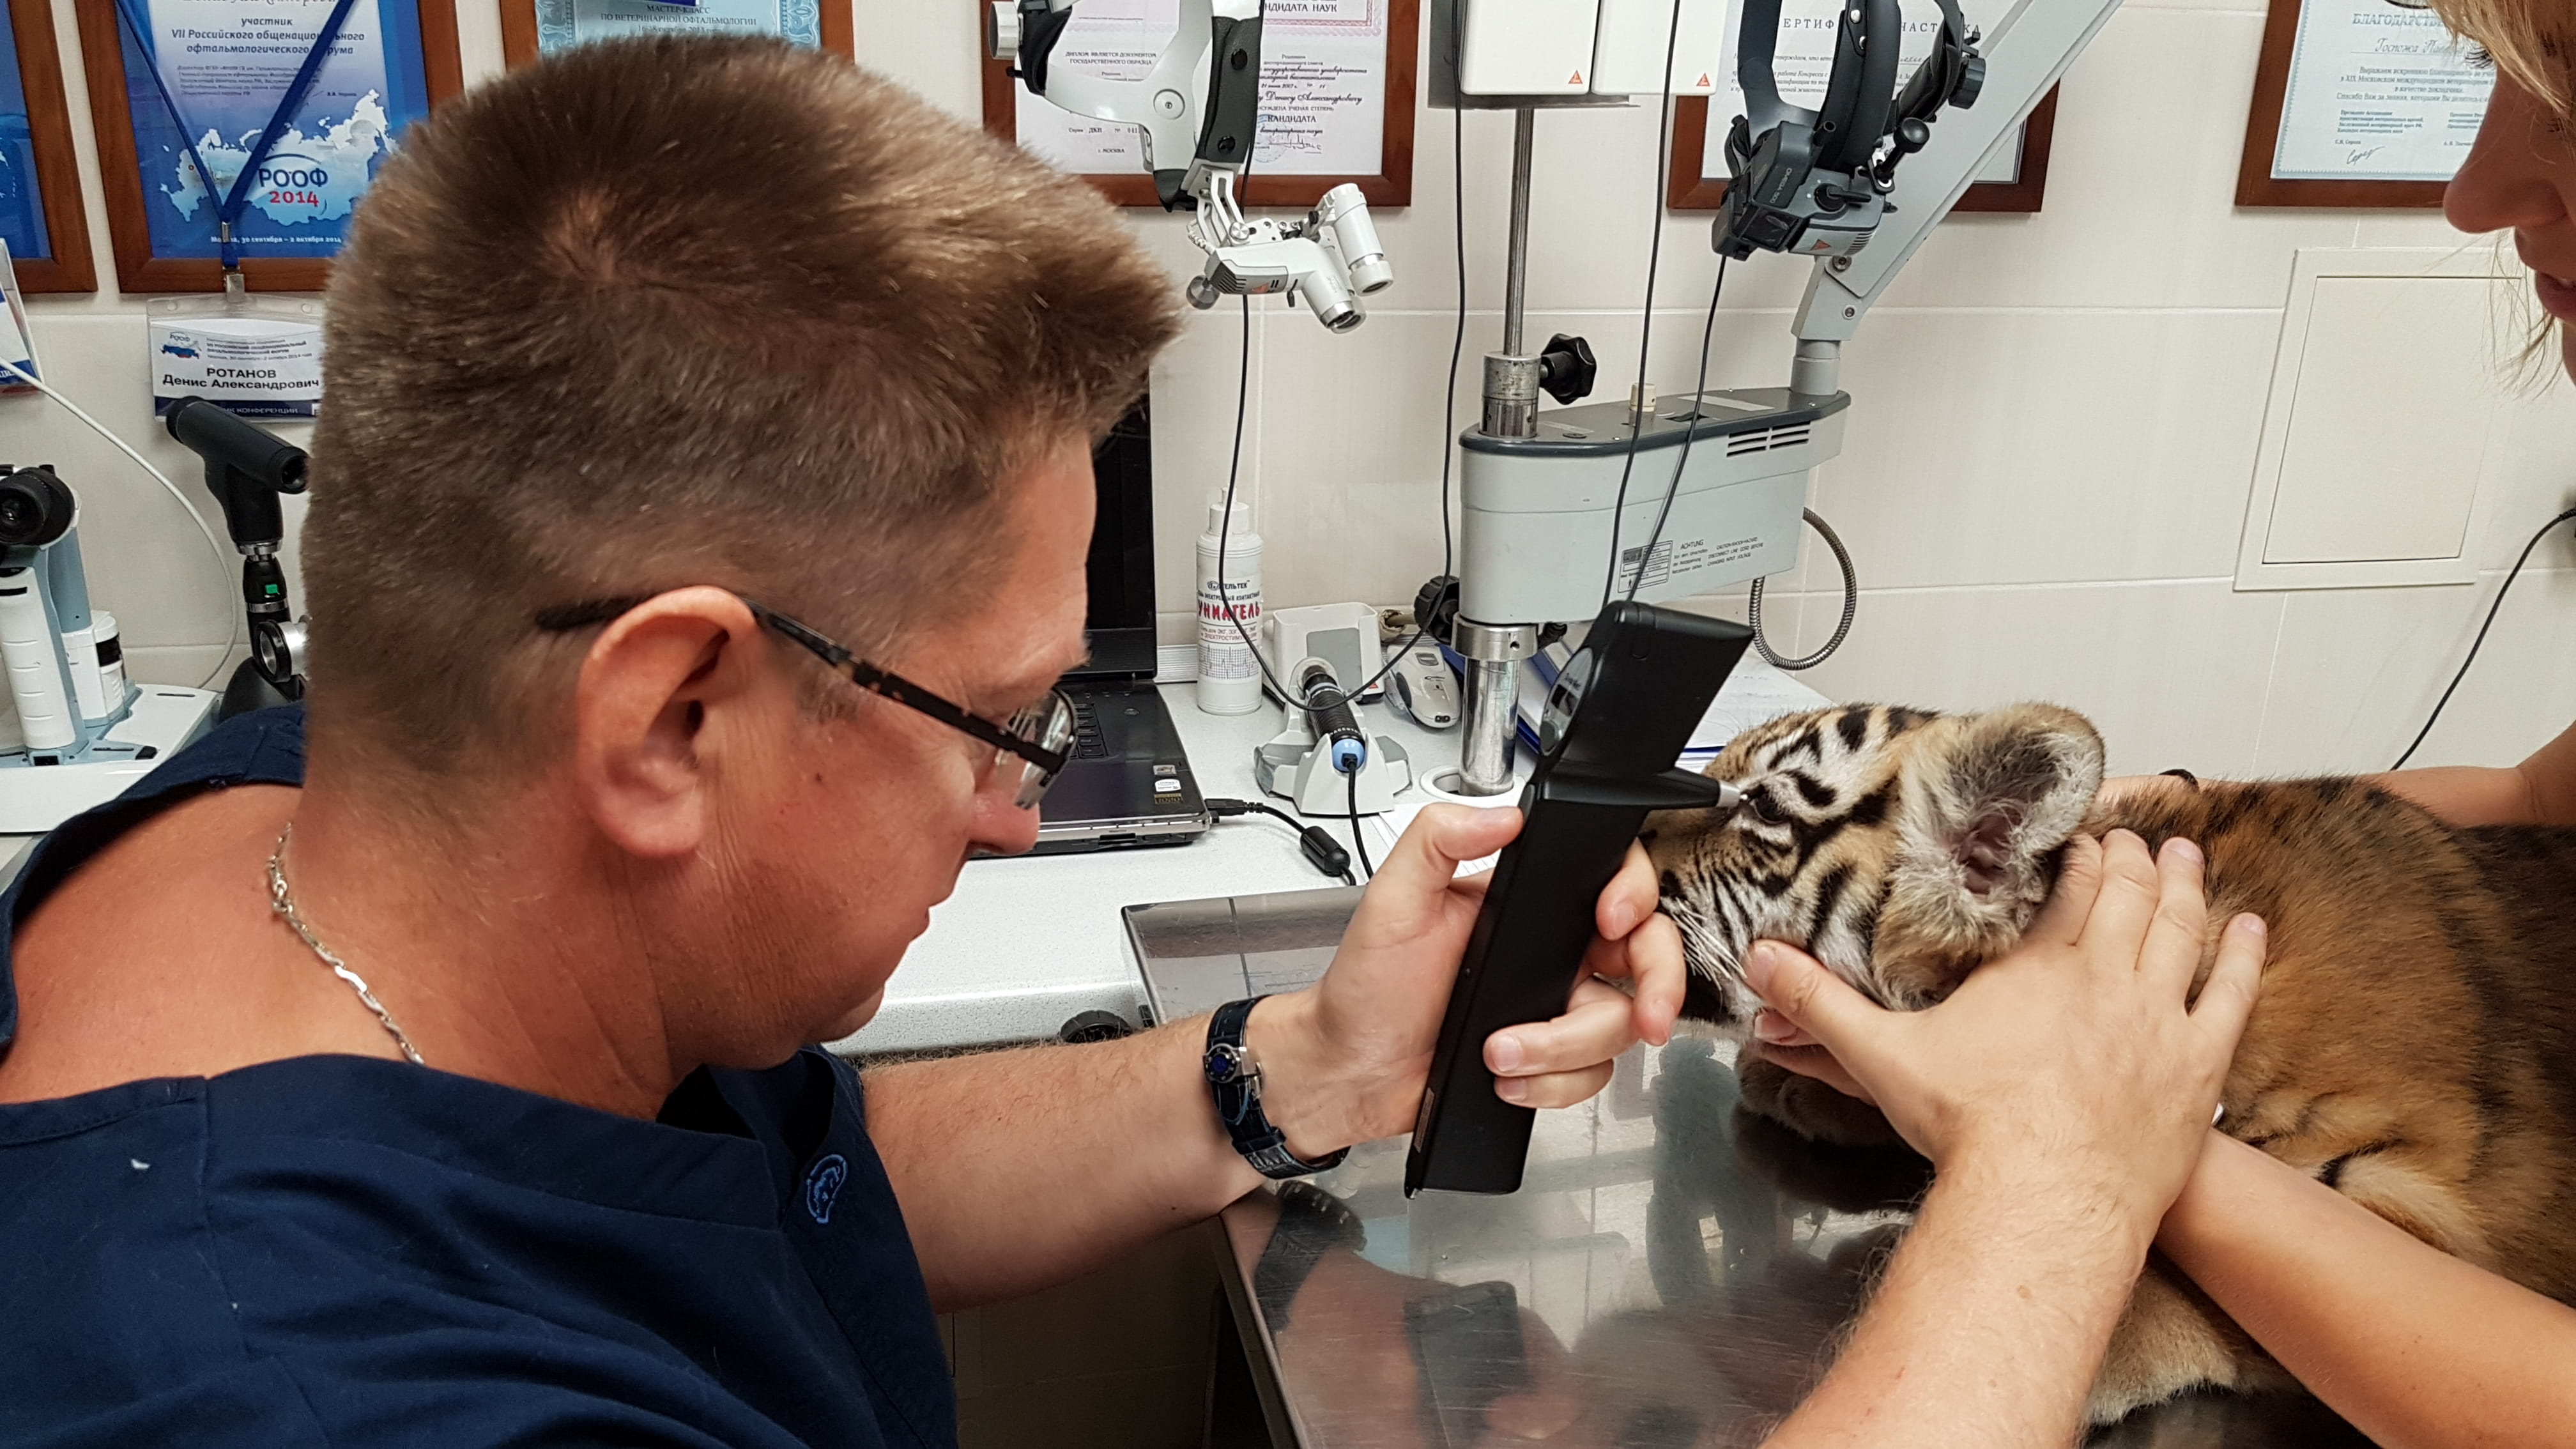 Измерение внутриглазного давления у тигрёнка.
Measurement of intraocular pressure in a tiger cub.